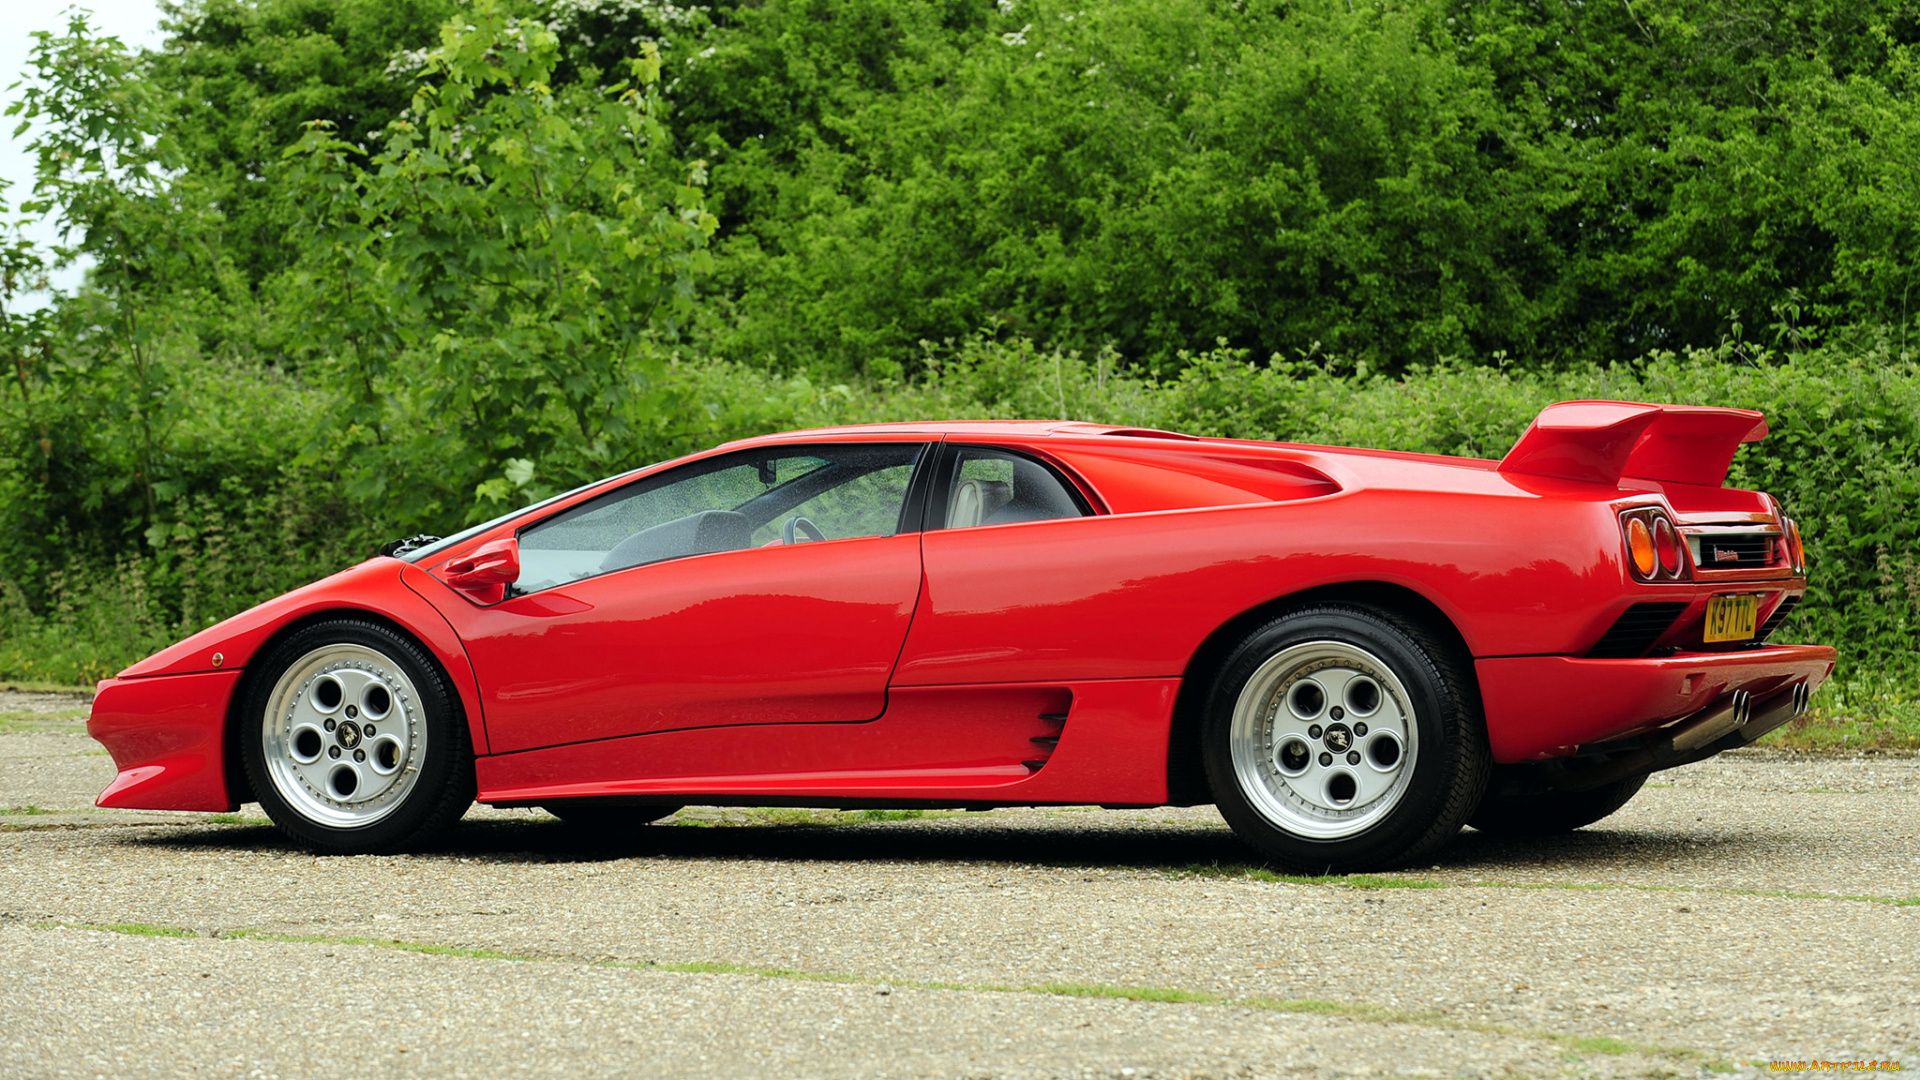 Lamborghini Diablo 1990